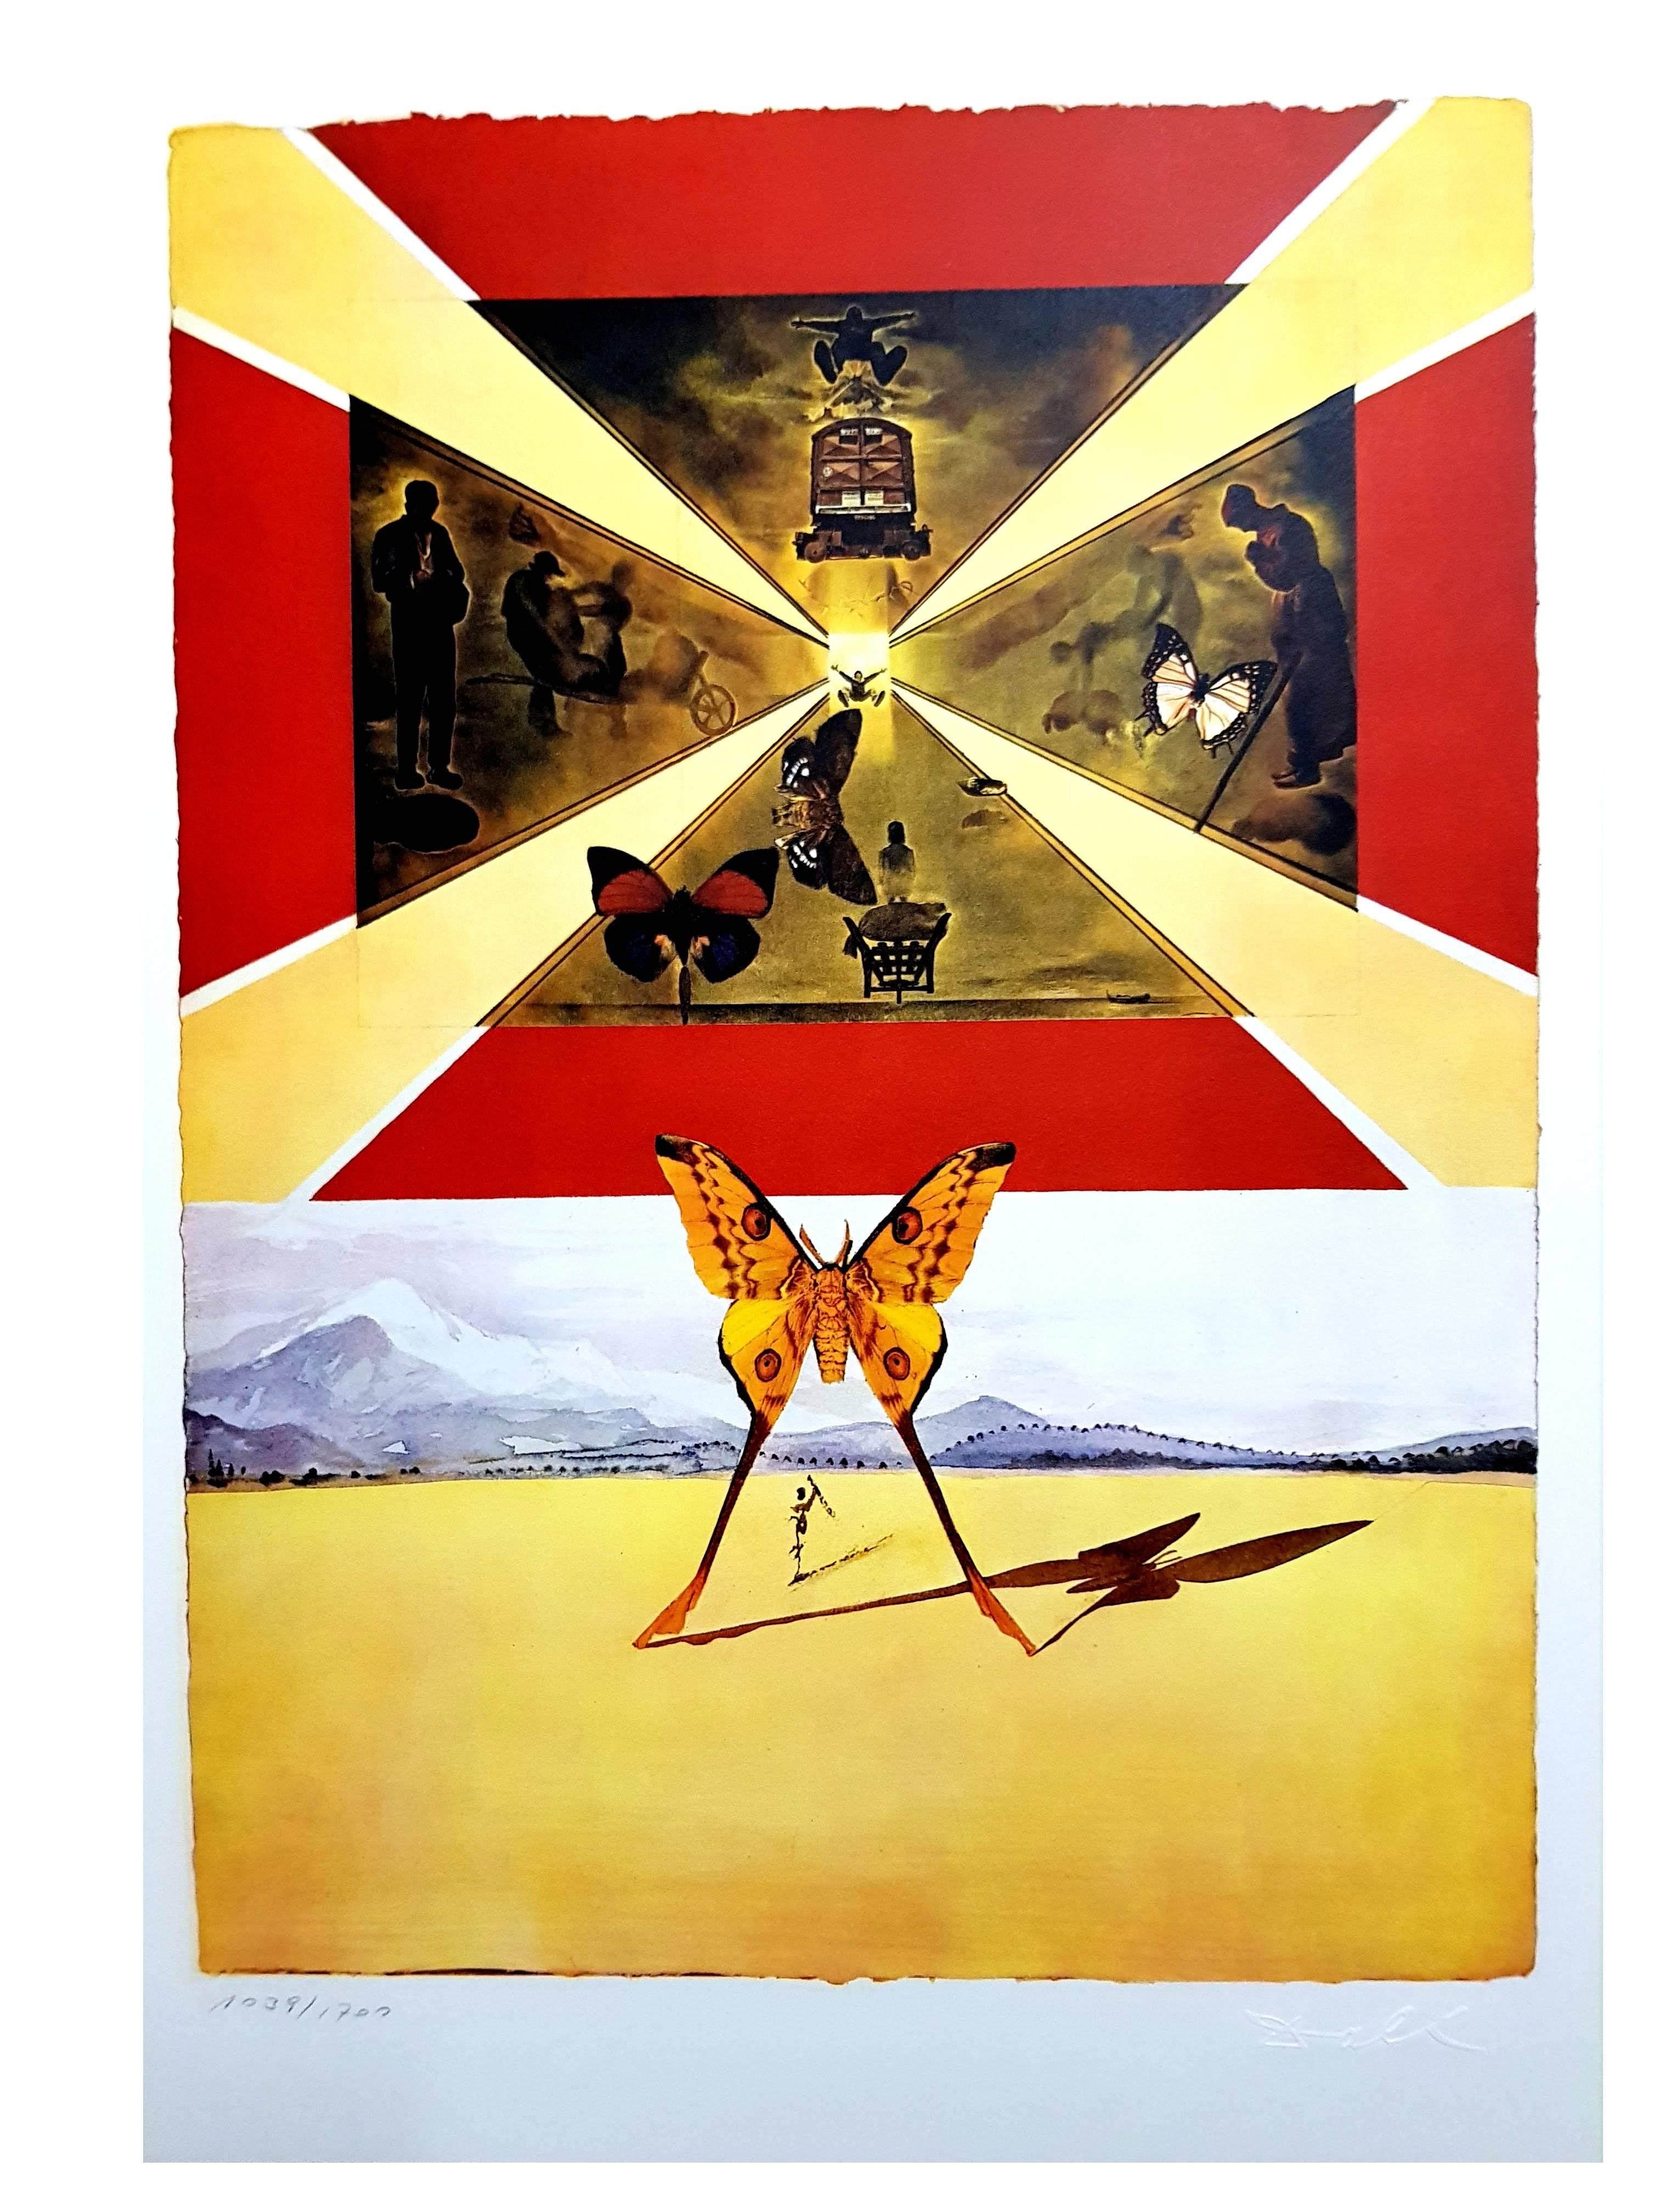 Animal Print Salvador Dalí - Salvador Dali (d'après) - Roussillon - Lithographie